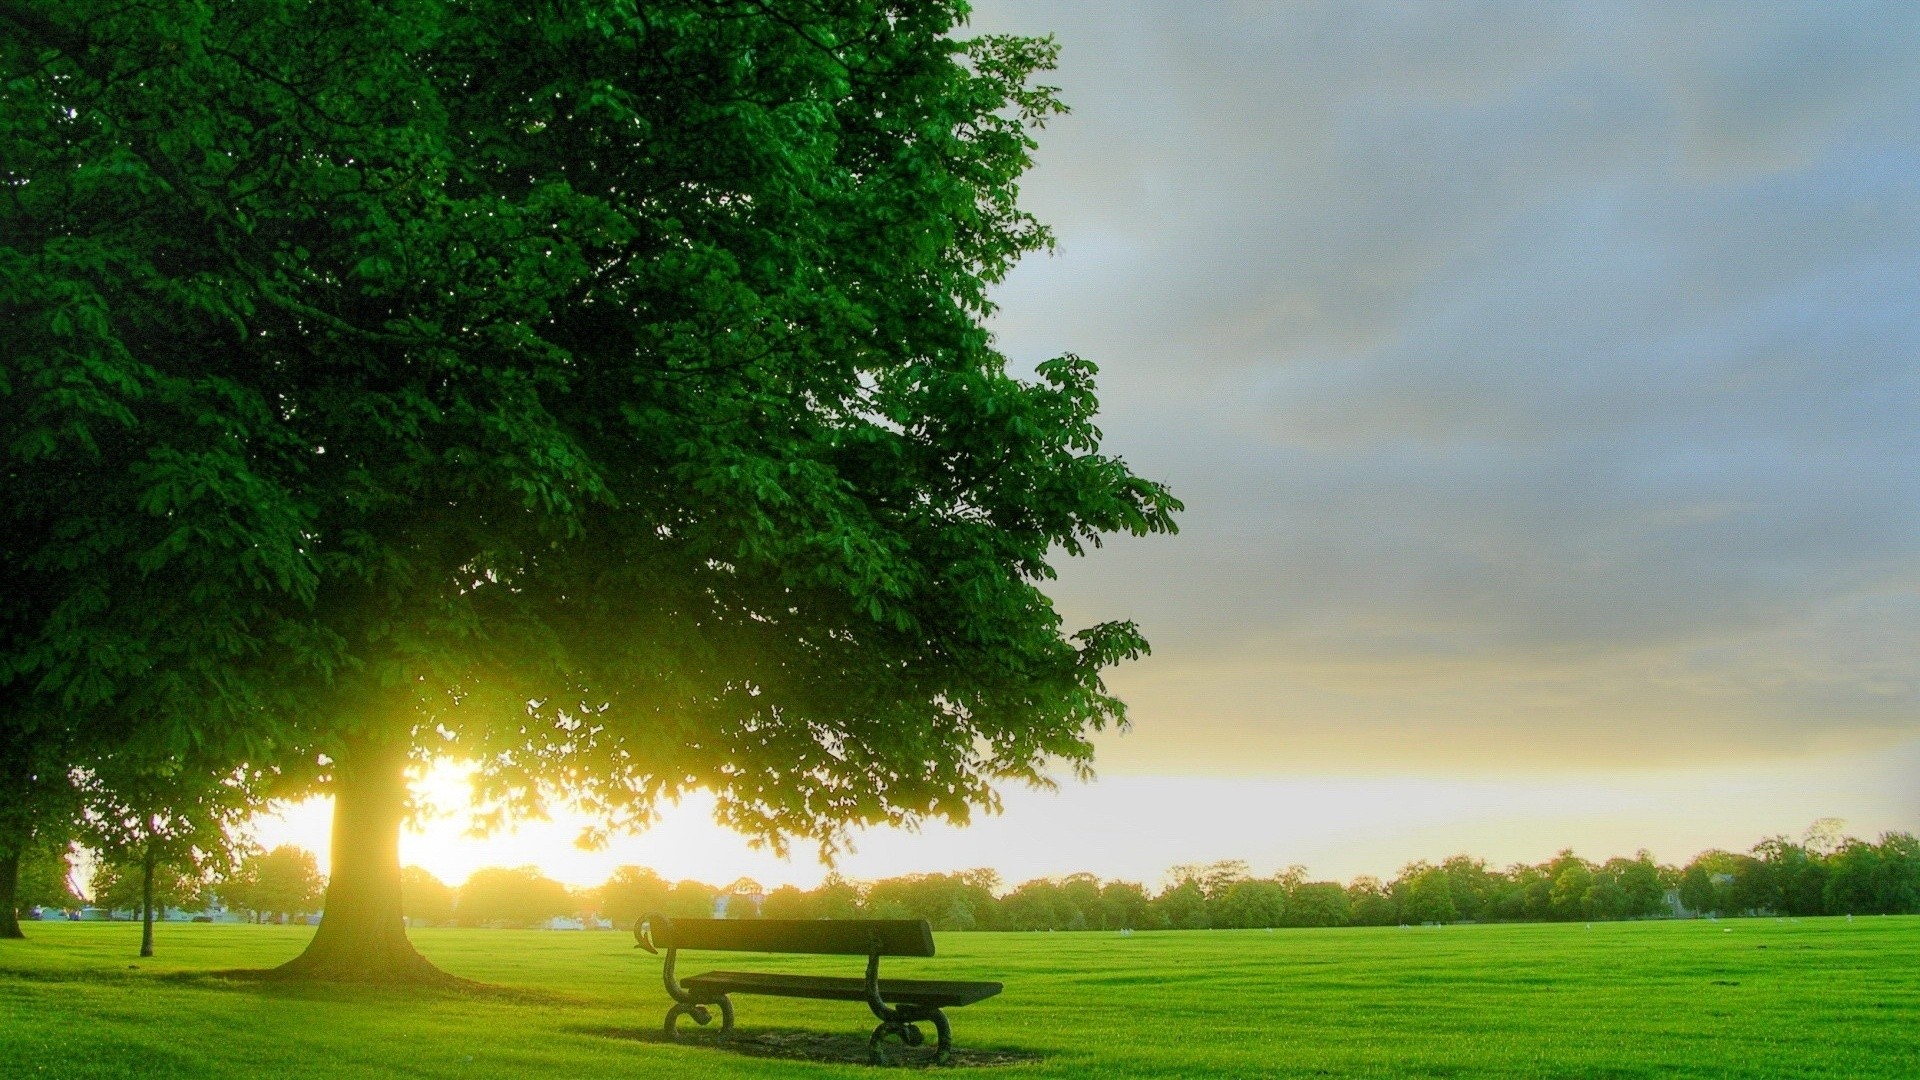 General 1920x1080 park bench grass sunlight sunset outdoors trees